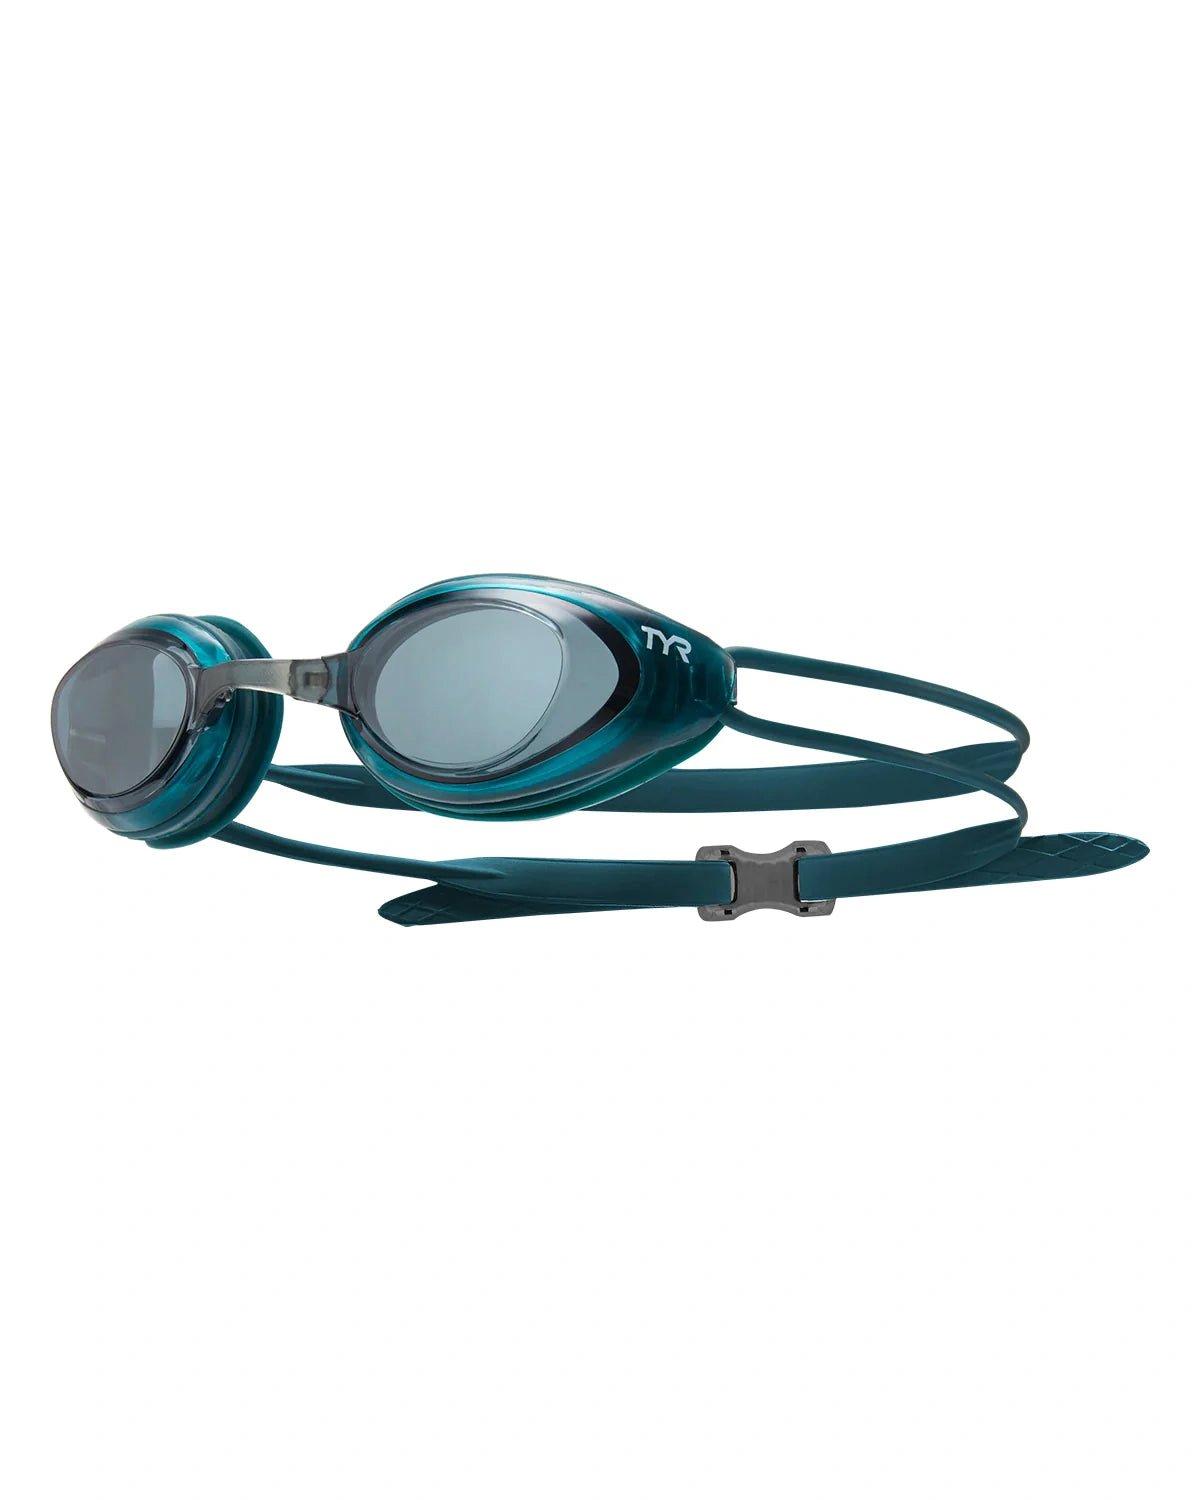 Очки для плавания Black Hawk Racing Tyr, зеленый очки для плавания для взрослых для близорукости водонепроницаемые с ушками для плавания по рецепту незапотевающие очки для дайвинга